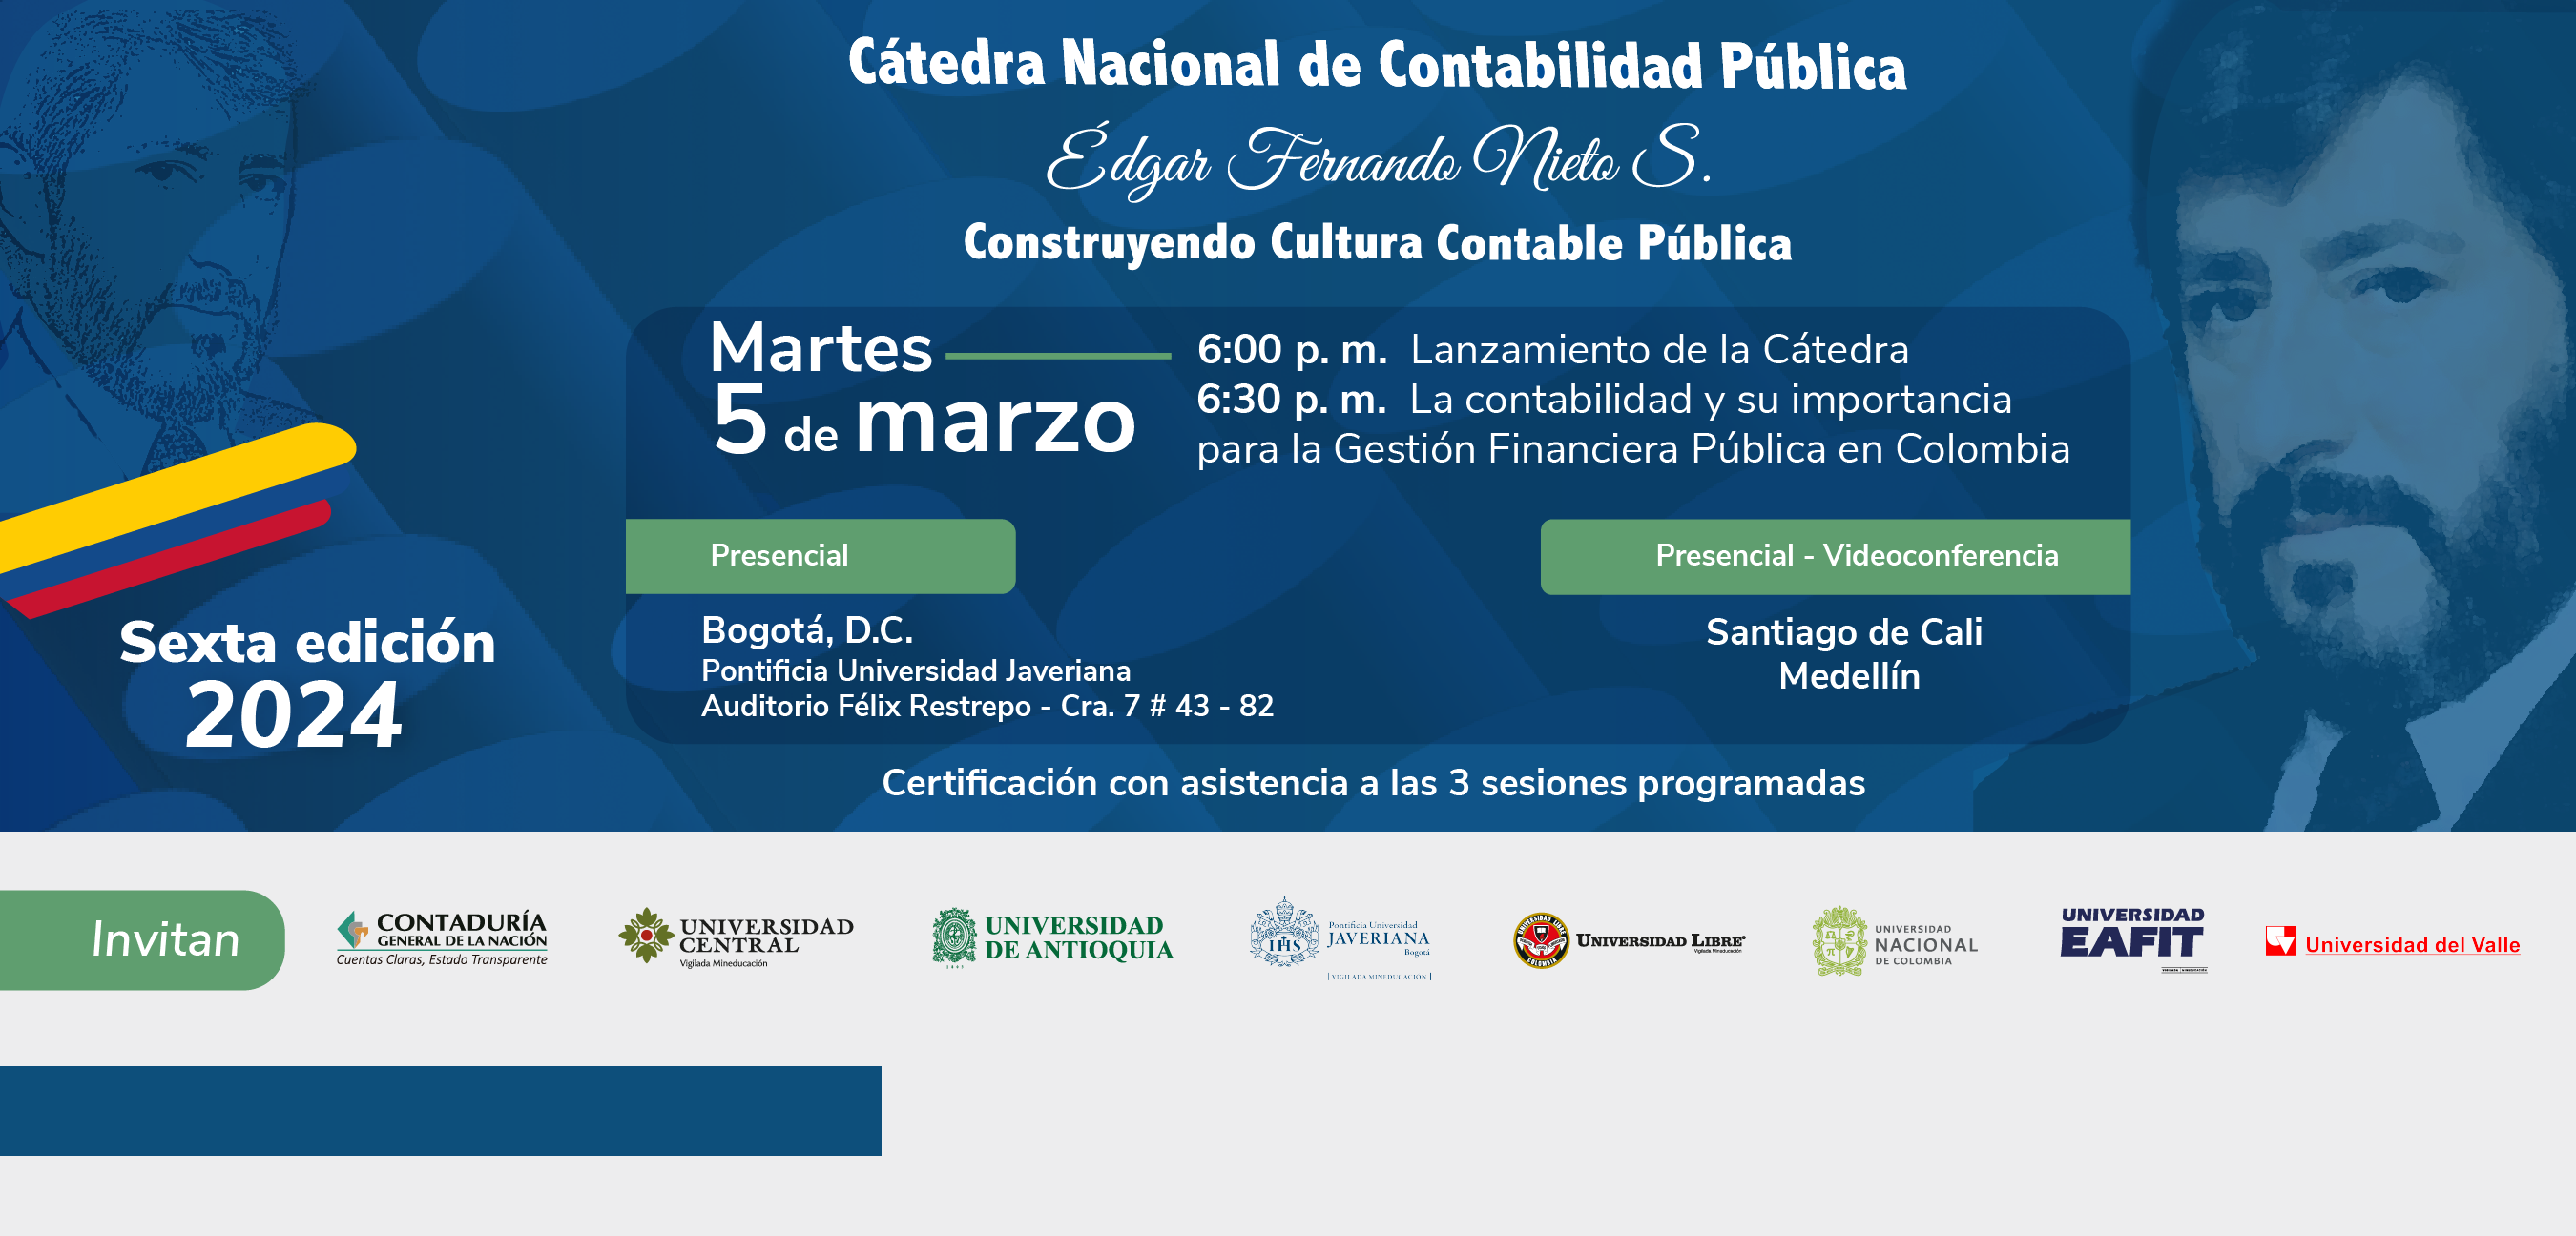 Prepárese para la Sexta edición de la Cátedra Nacional de Contabilidad Pública Édgar Fernando Nieto Sánchez